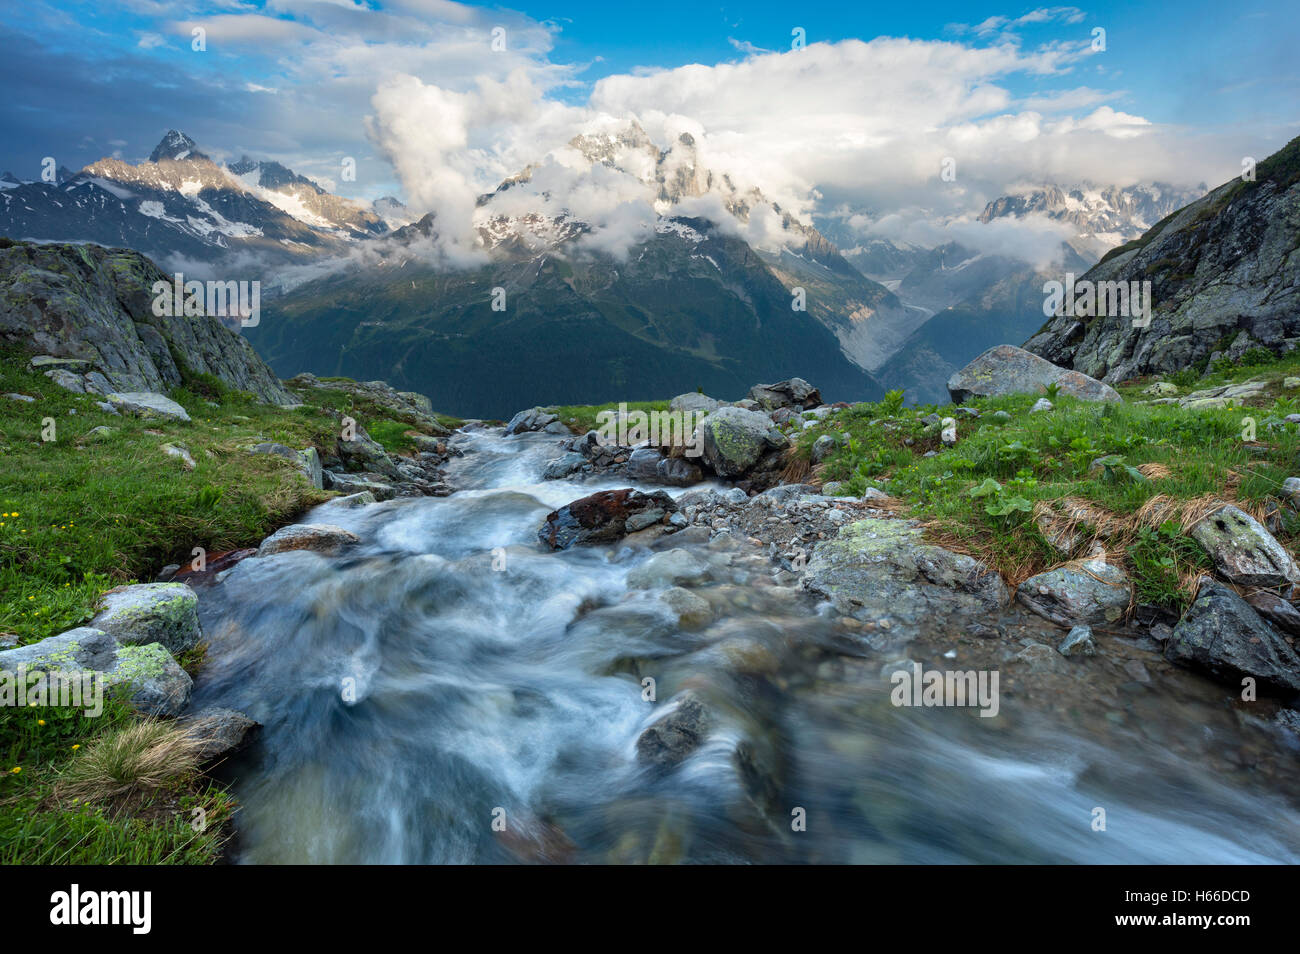 Sotto flusso di Aiguille Verte, Valle di Chamonix, sulle Alpi francesi, Francia. Foto Stock